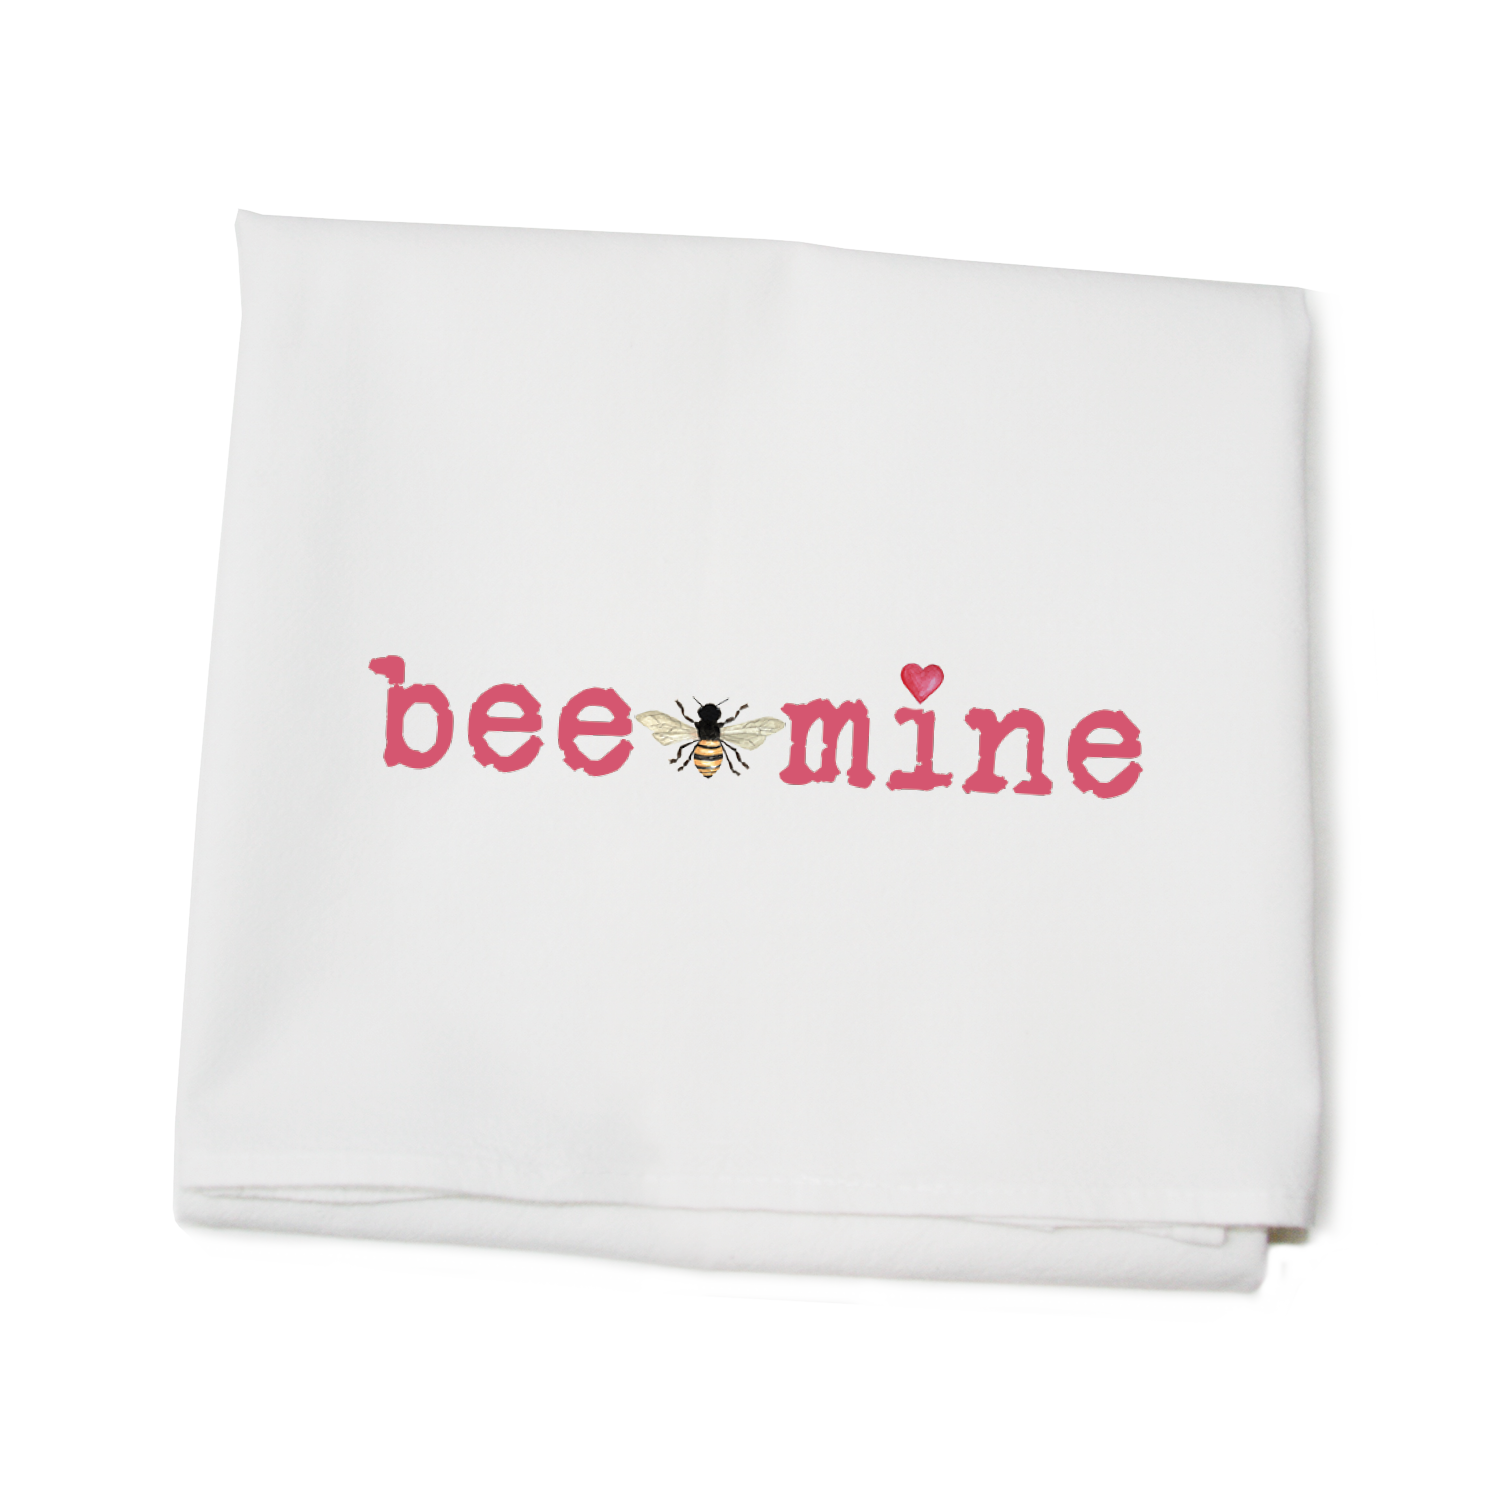 bee mine flour sack towel